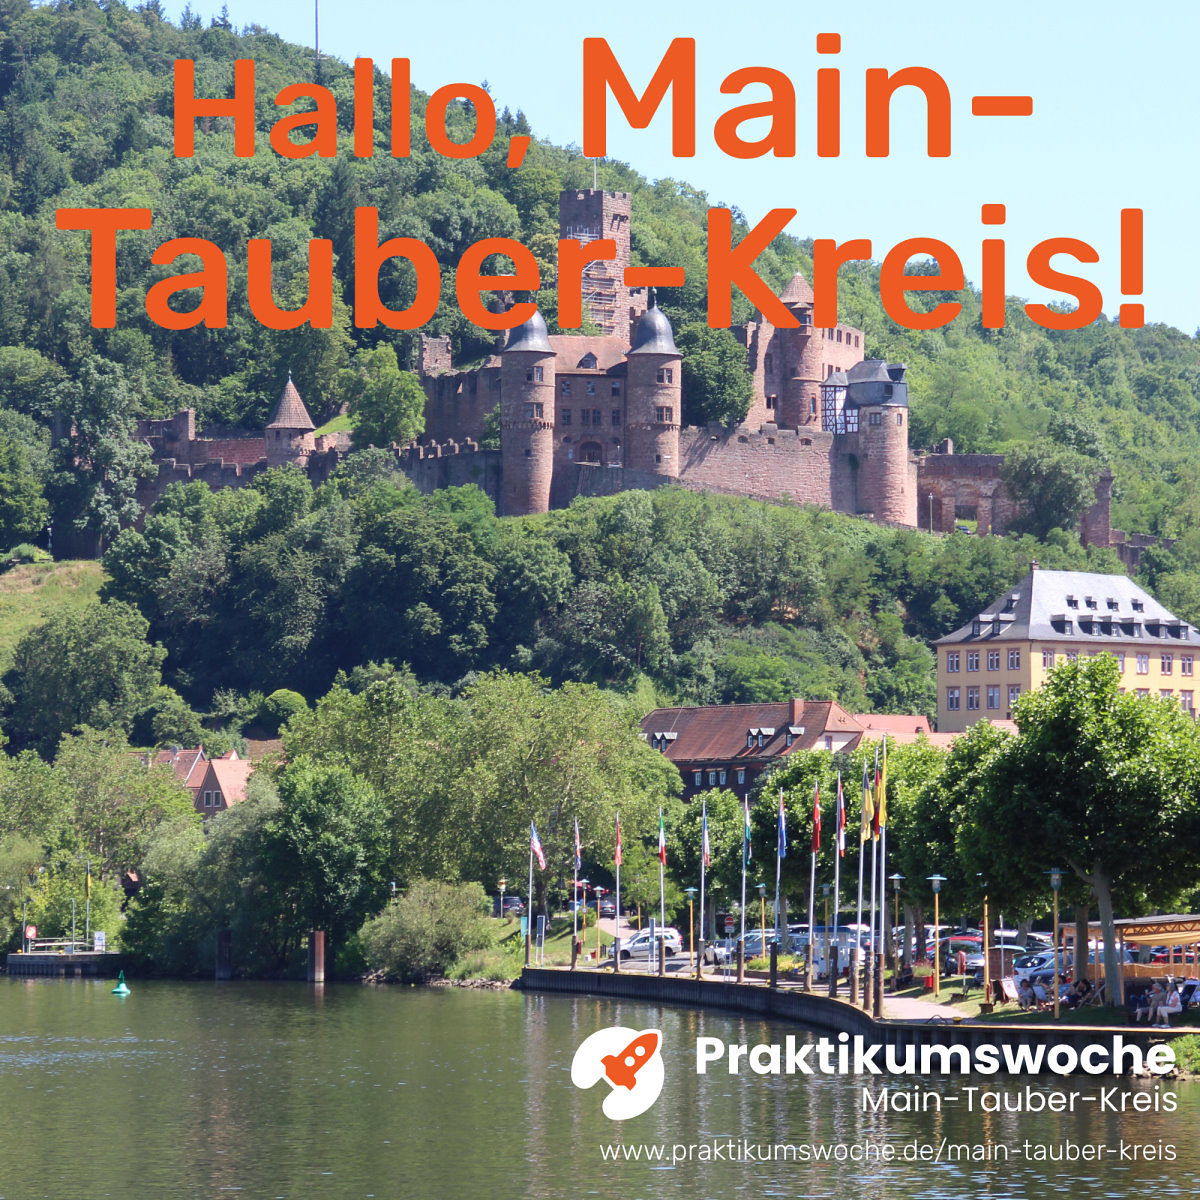 Mainufer mit Burg in Wertheim, oben oranger Schriftzug Hallo, Main-Tauber-Kreis! unten in weiß Logo Praktikumswoche mit URL